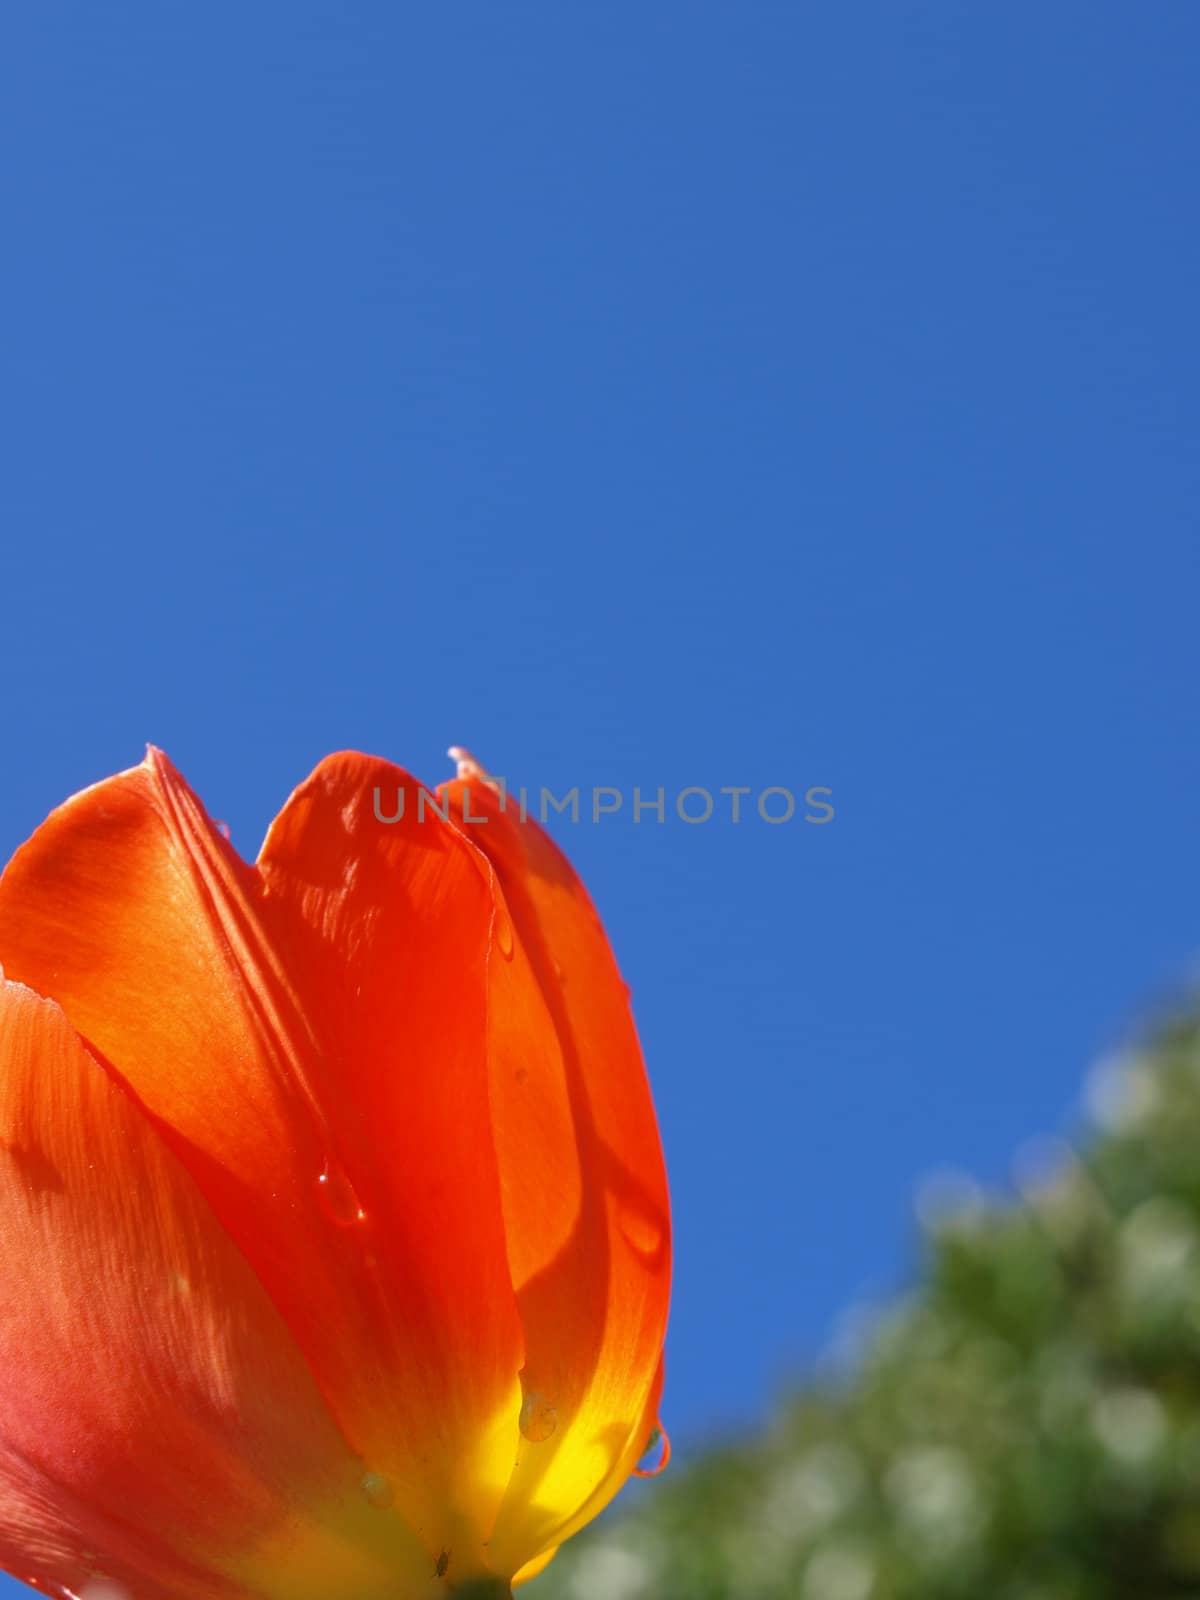 orange tulip shown in the morning